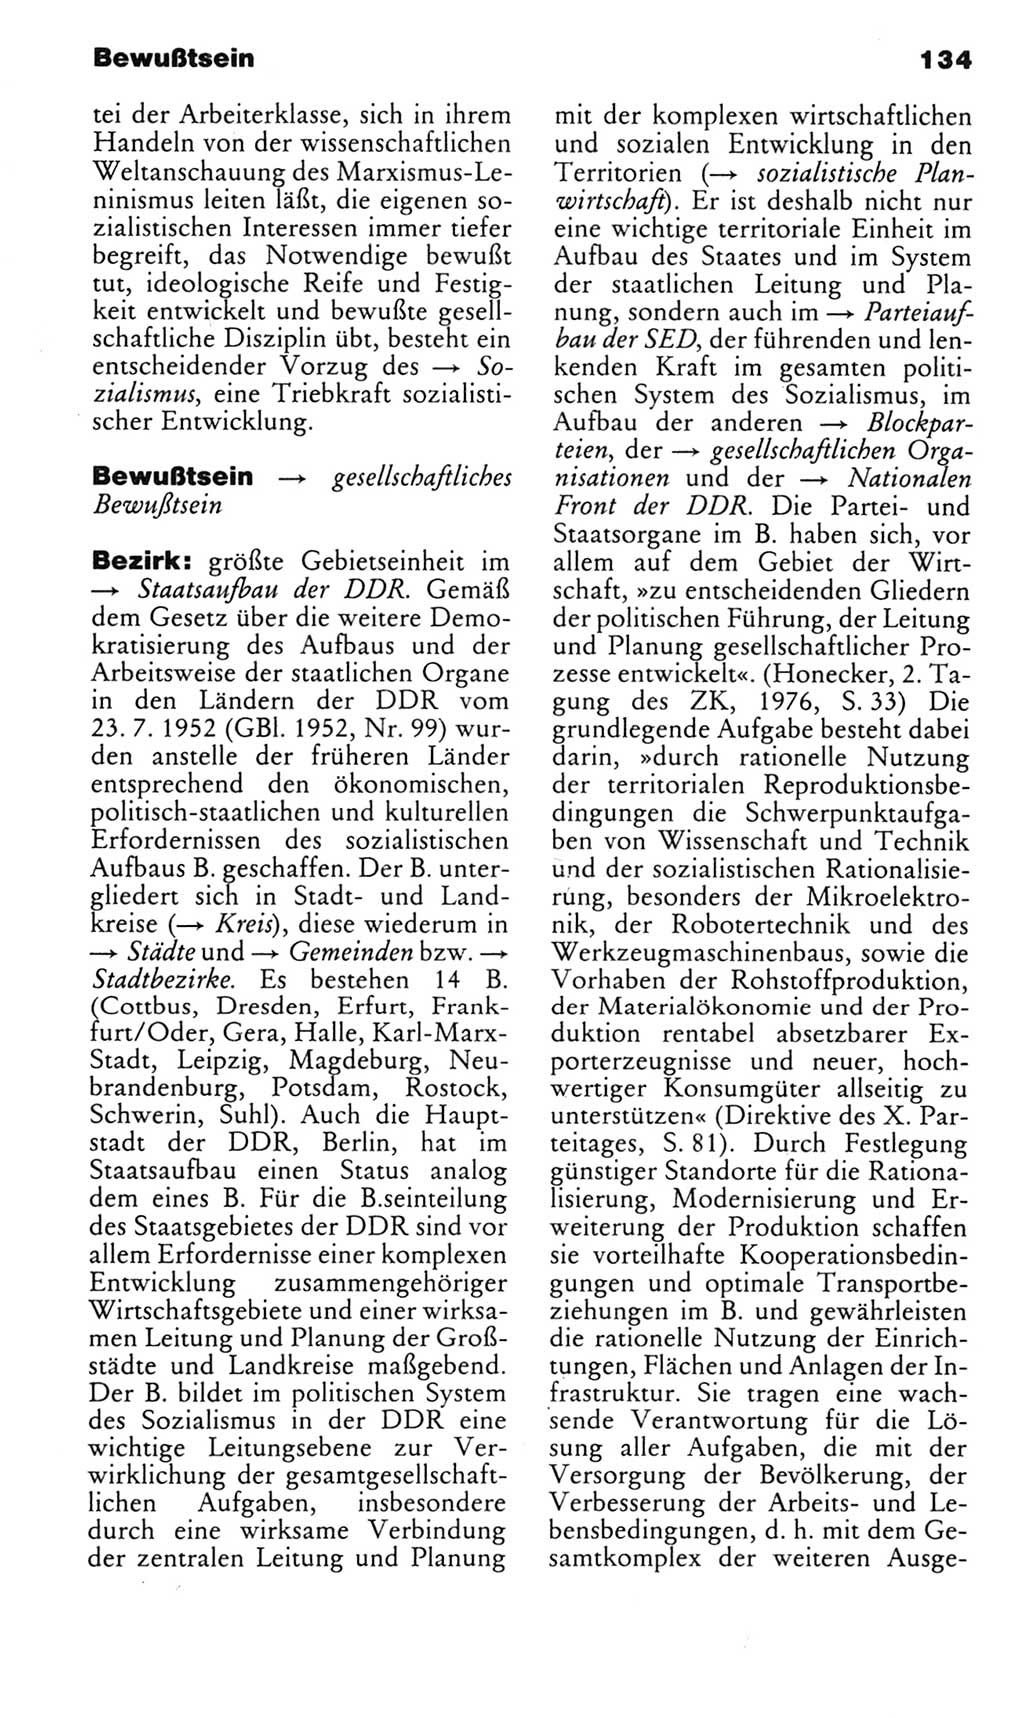 Kleines politisches Wörterbuch [Deutsche Demokratische Republik (DDR)] 1985, Seite 134 (Kl. pol. Wb. DDR 1985, S. 134)